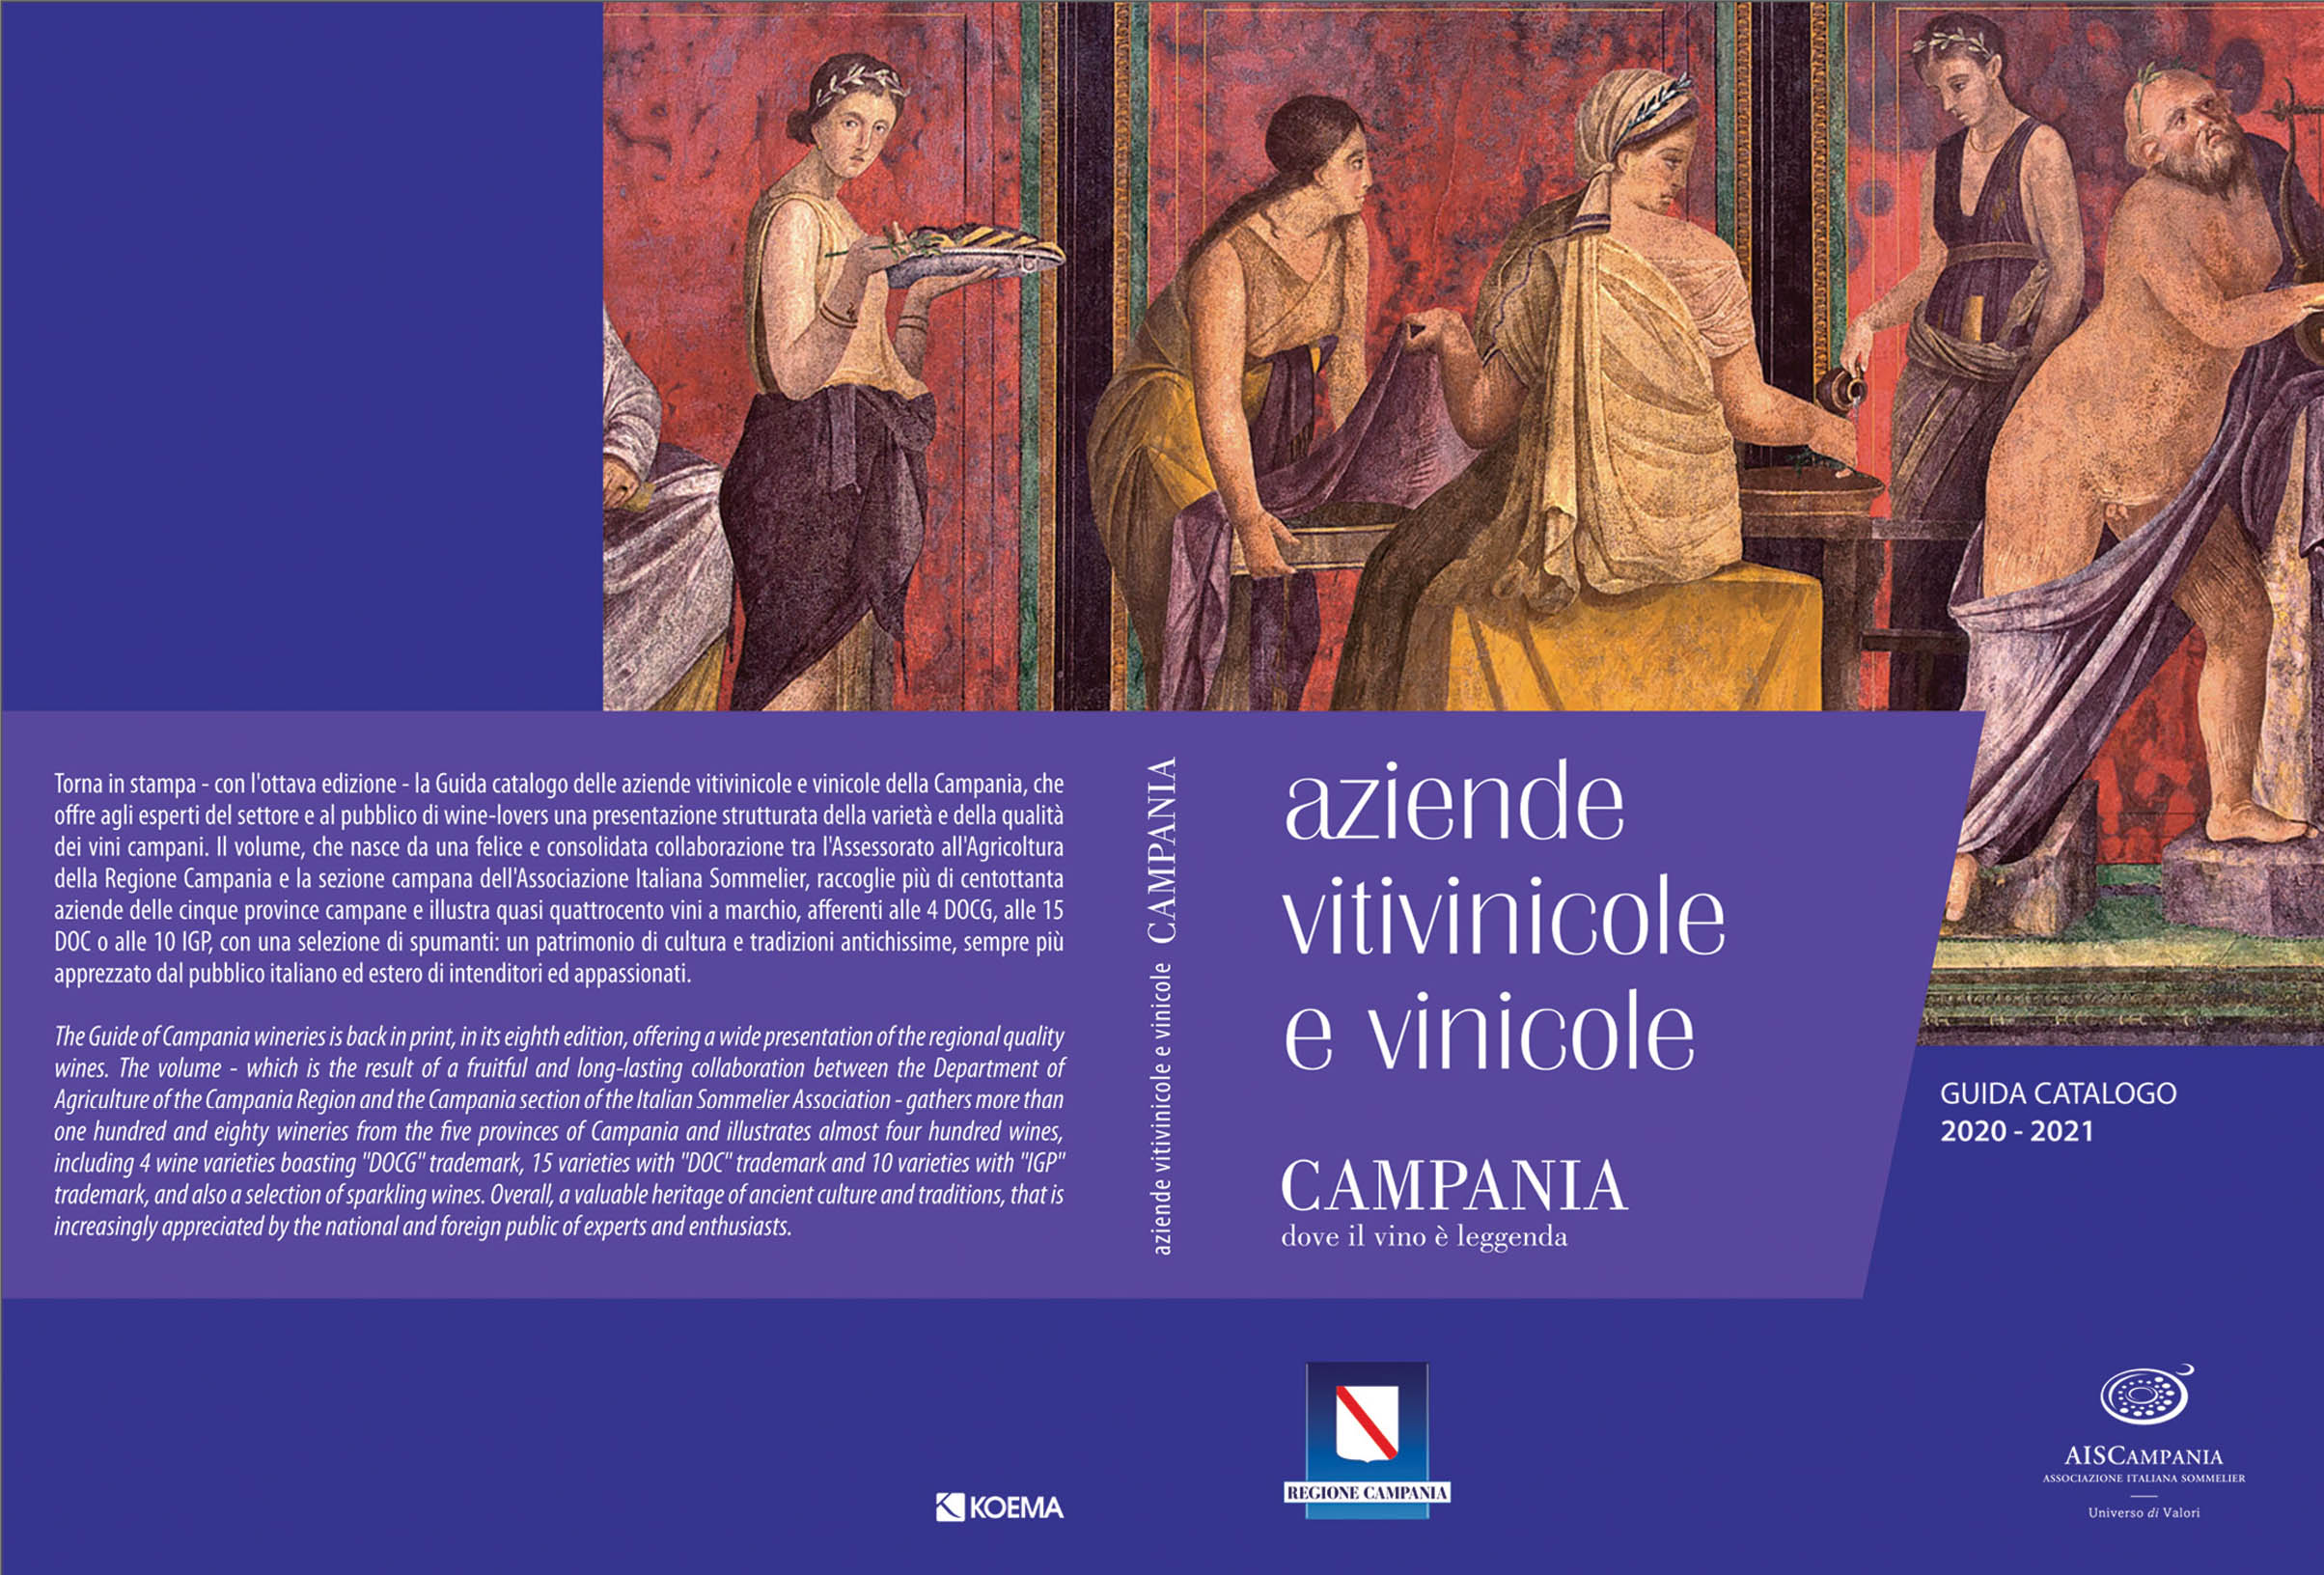 Regione Campania – Aziende vitivinicole e vinicole